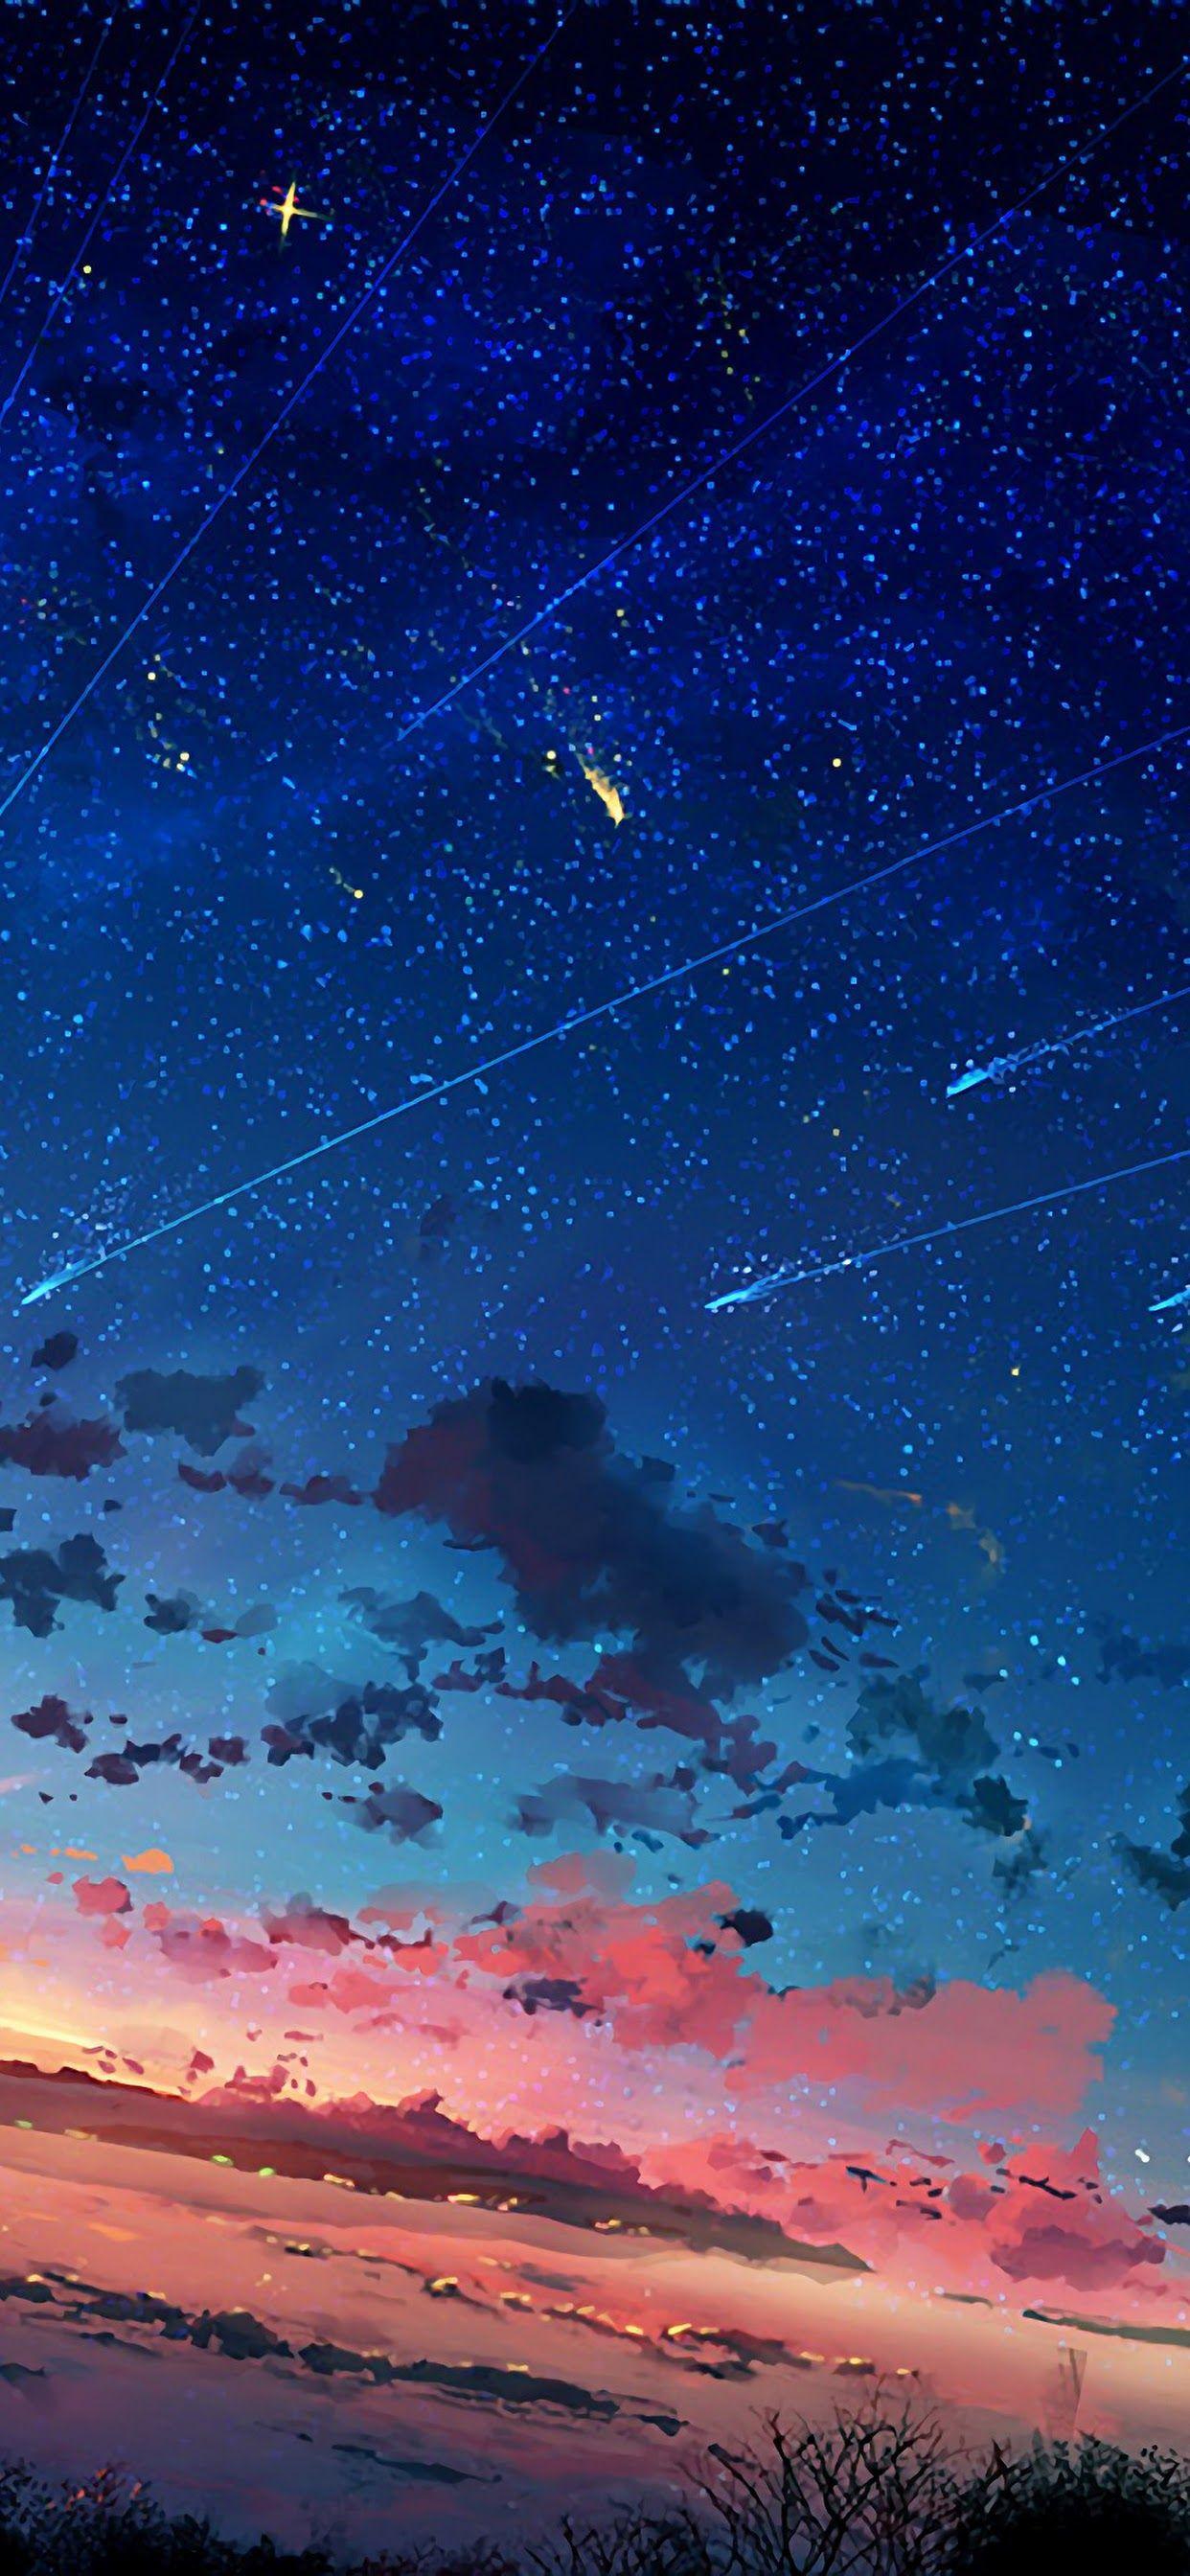 Những bức hình nền anime đêm tràn ngập bầu trời sẽ khiến bạn trầm mê với cảm giác như mình đang ngắm nhìn vũ trụ vô tận. Với sự kết hợp tuyệt vời giữa anime và bầu trời, những bức ảnh này chắc chắn sẽ làm bạn ngất ngây. Hãy nhấn vào đây để xem ngay nhé!